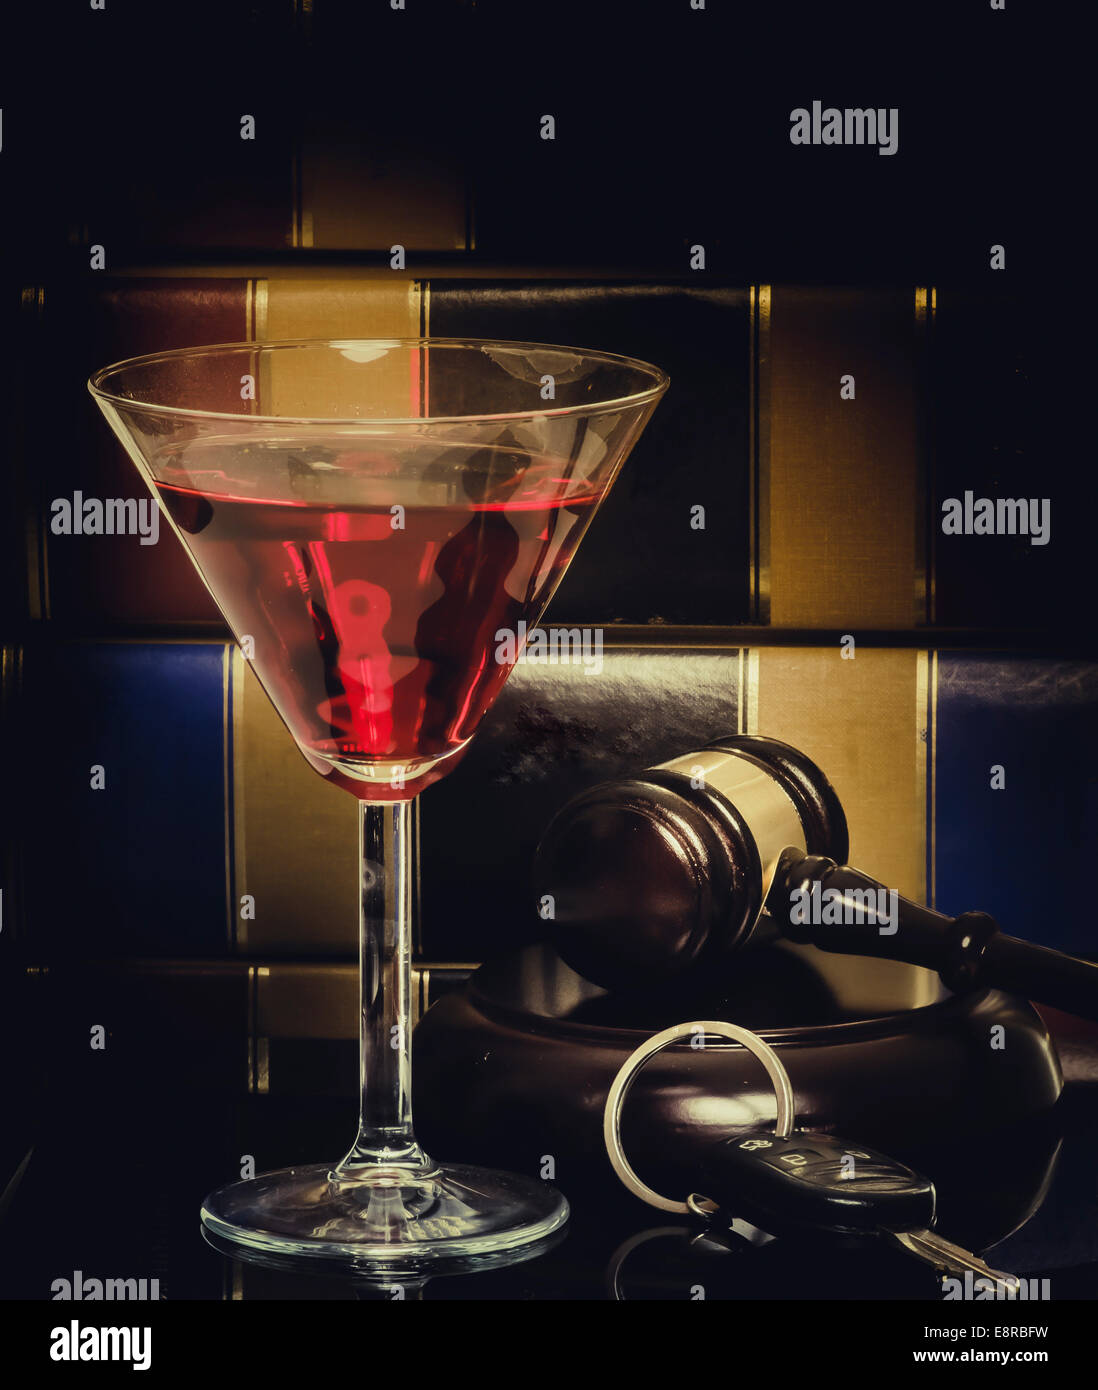 Dui, bere durante la guida, legge concetto giuridico immagine..... Libri, bicchiere di vino e le chiavi dell'auto. Foto Stock